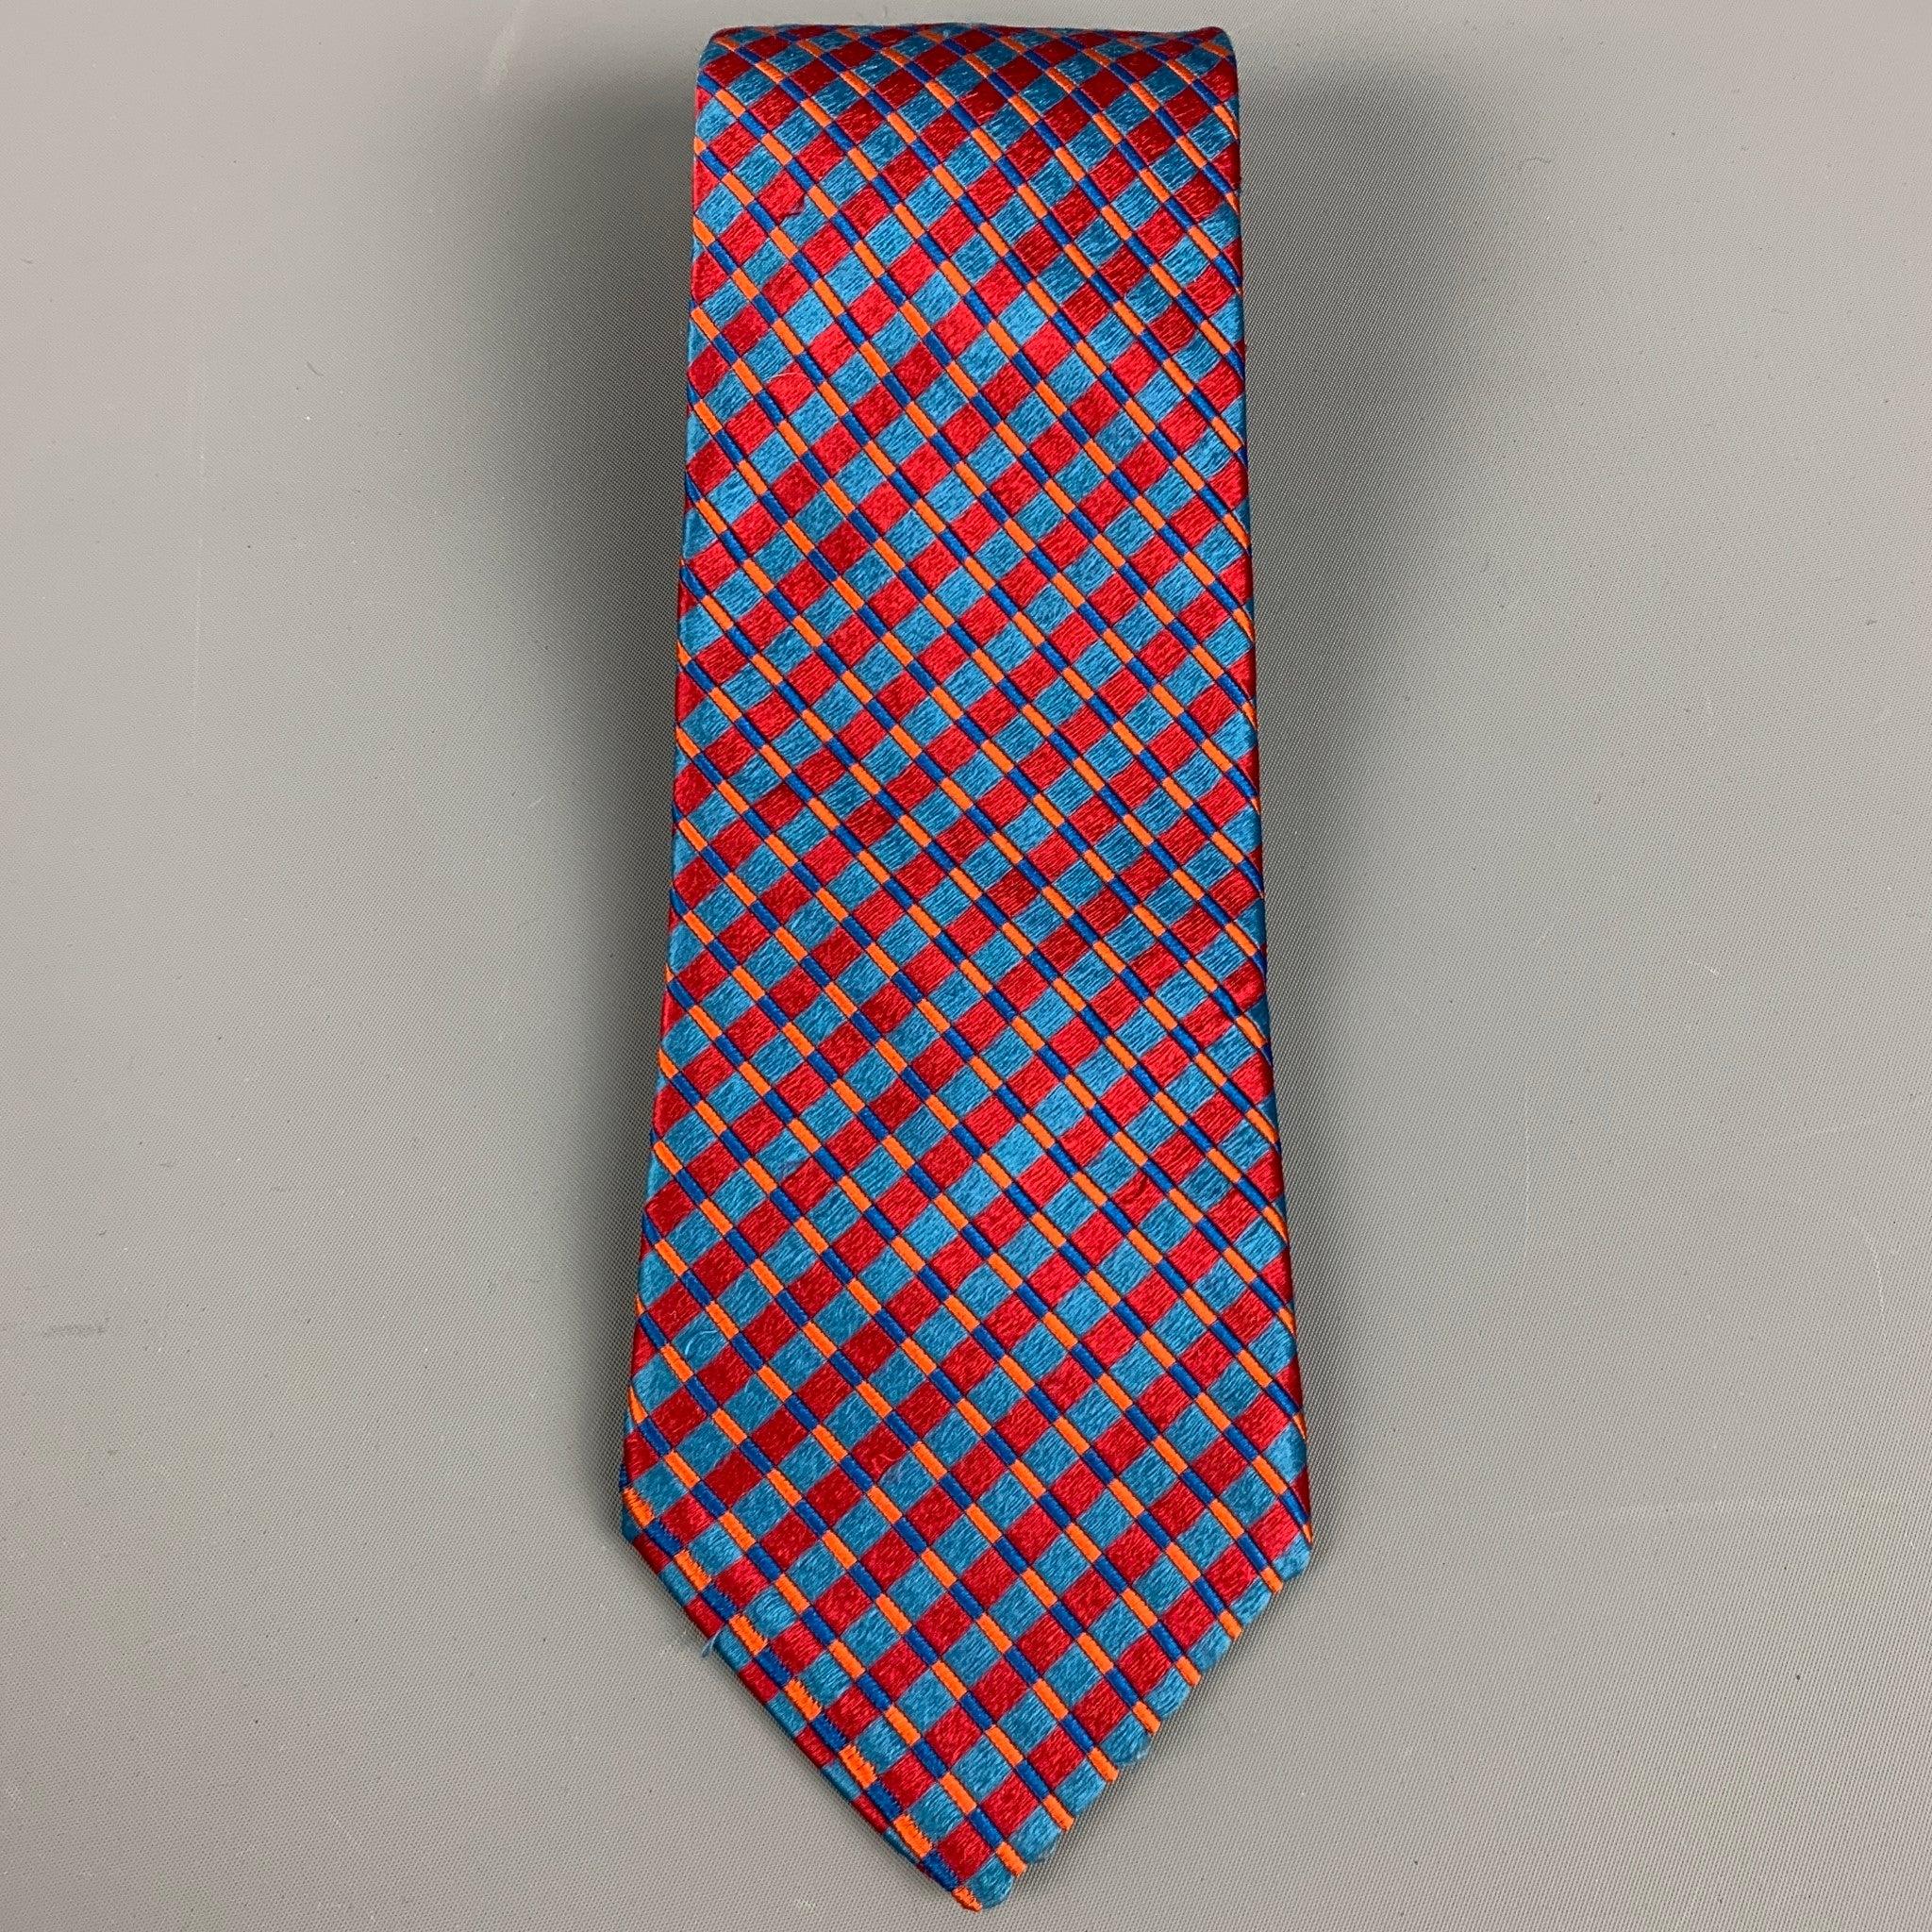 ERMENEGILDO ZEGNA
Krawatte in einer
roter und blauer Seidensatin mit lebhaftem Rauten-Jacquard-Muster. Made in Italy. sehr guter gebrauchter Zustand. Leichte Gebrauchsspuren. 

Abmessungen: 
  Breite: 3,5 Zoll Länge: 60 Zoll 
  
  
 
Referenz: